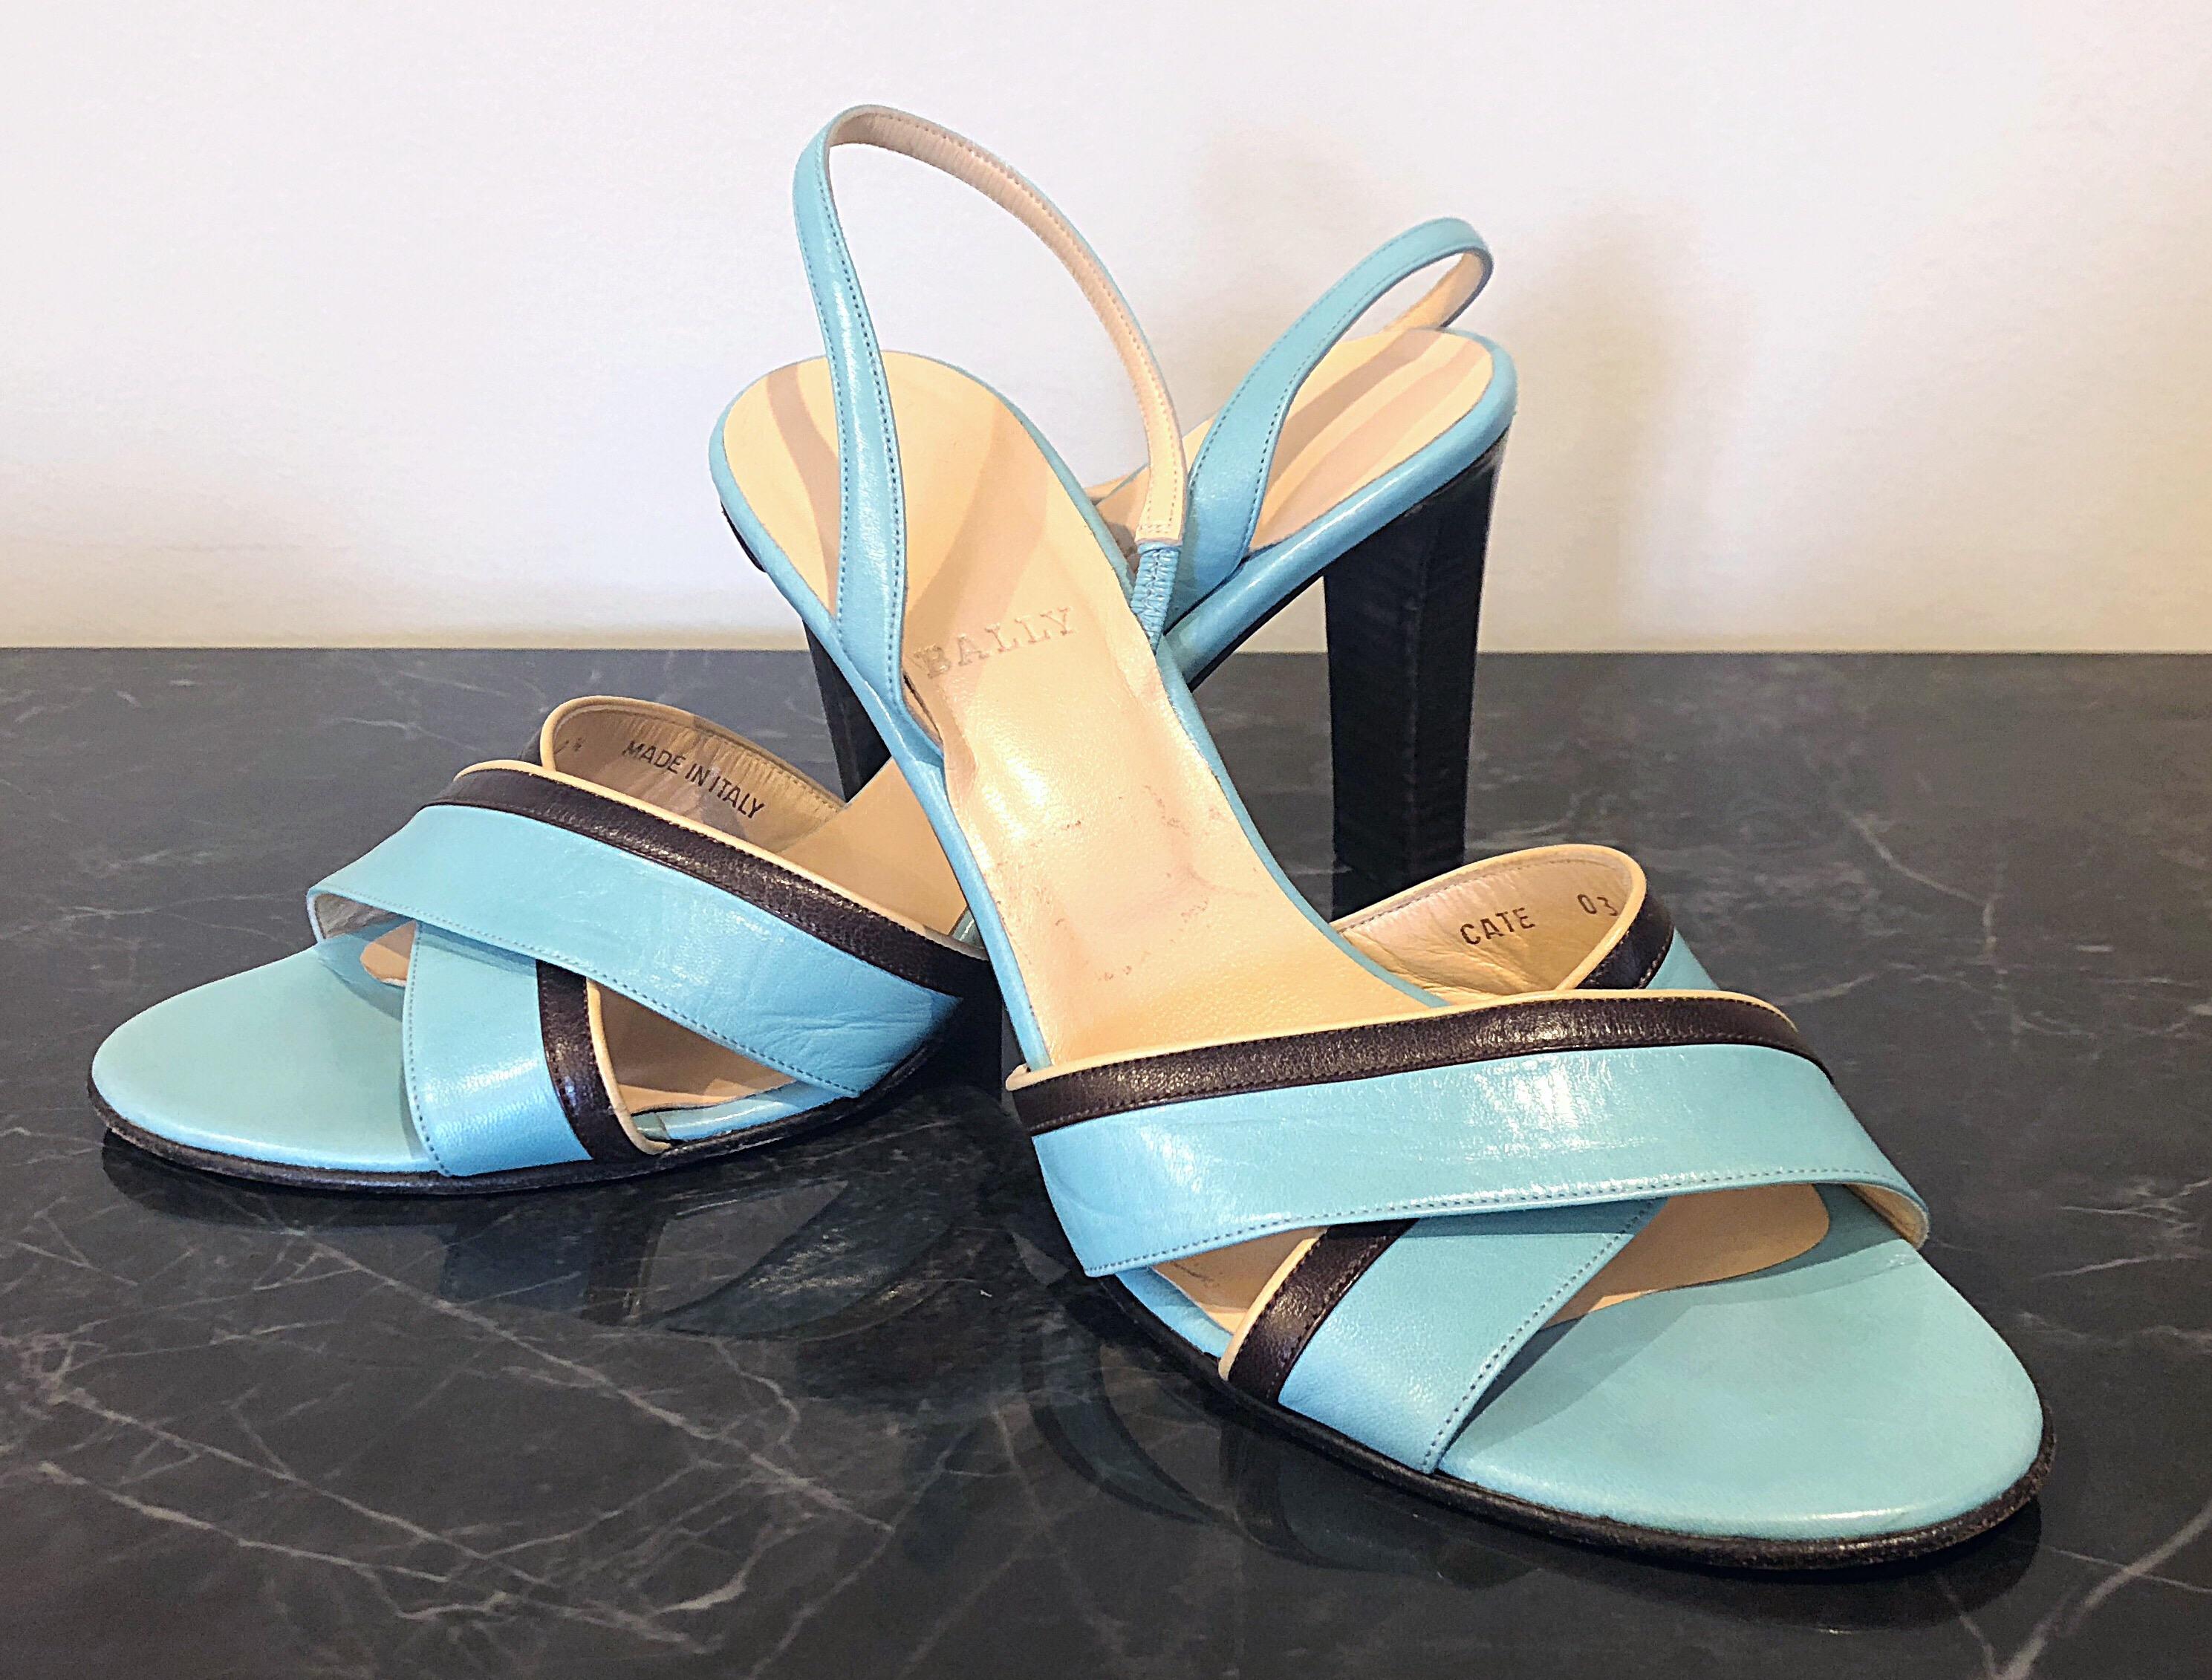 Magnifique vintage fin des années 90 BALLY robins egg blue Size 40.5 / US 10 stacked high heel sandals ! Le cuir est d'un bleu sarcelle/bleu d'œuf de poule vibrant. Le talon marron empilé assure un grand confort. La touche de couleur parfaite pour